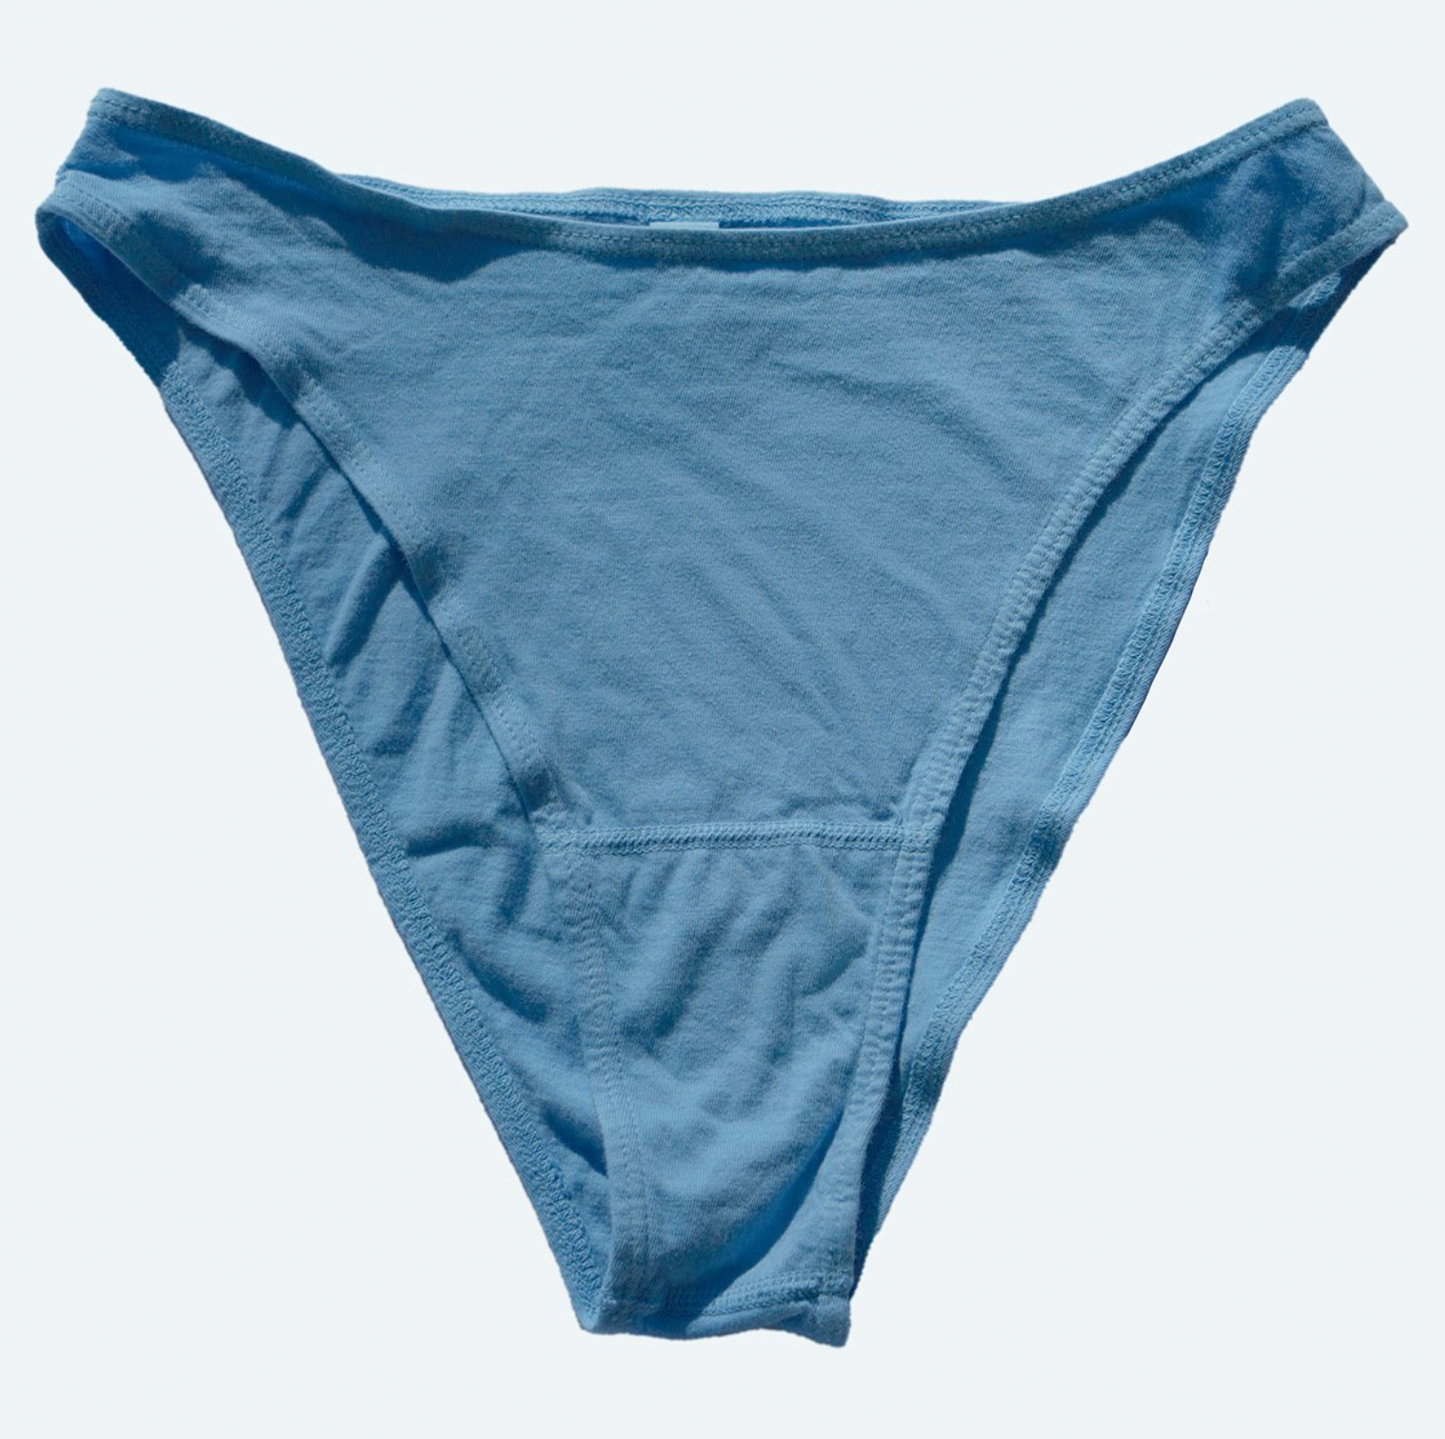 French Cut Underwear - Sky